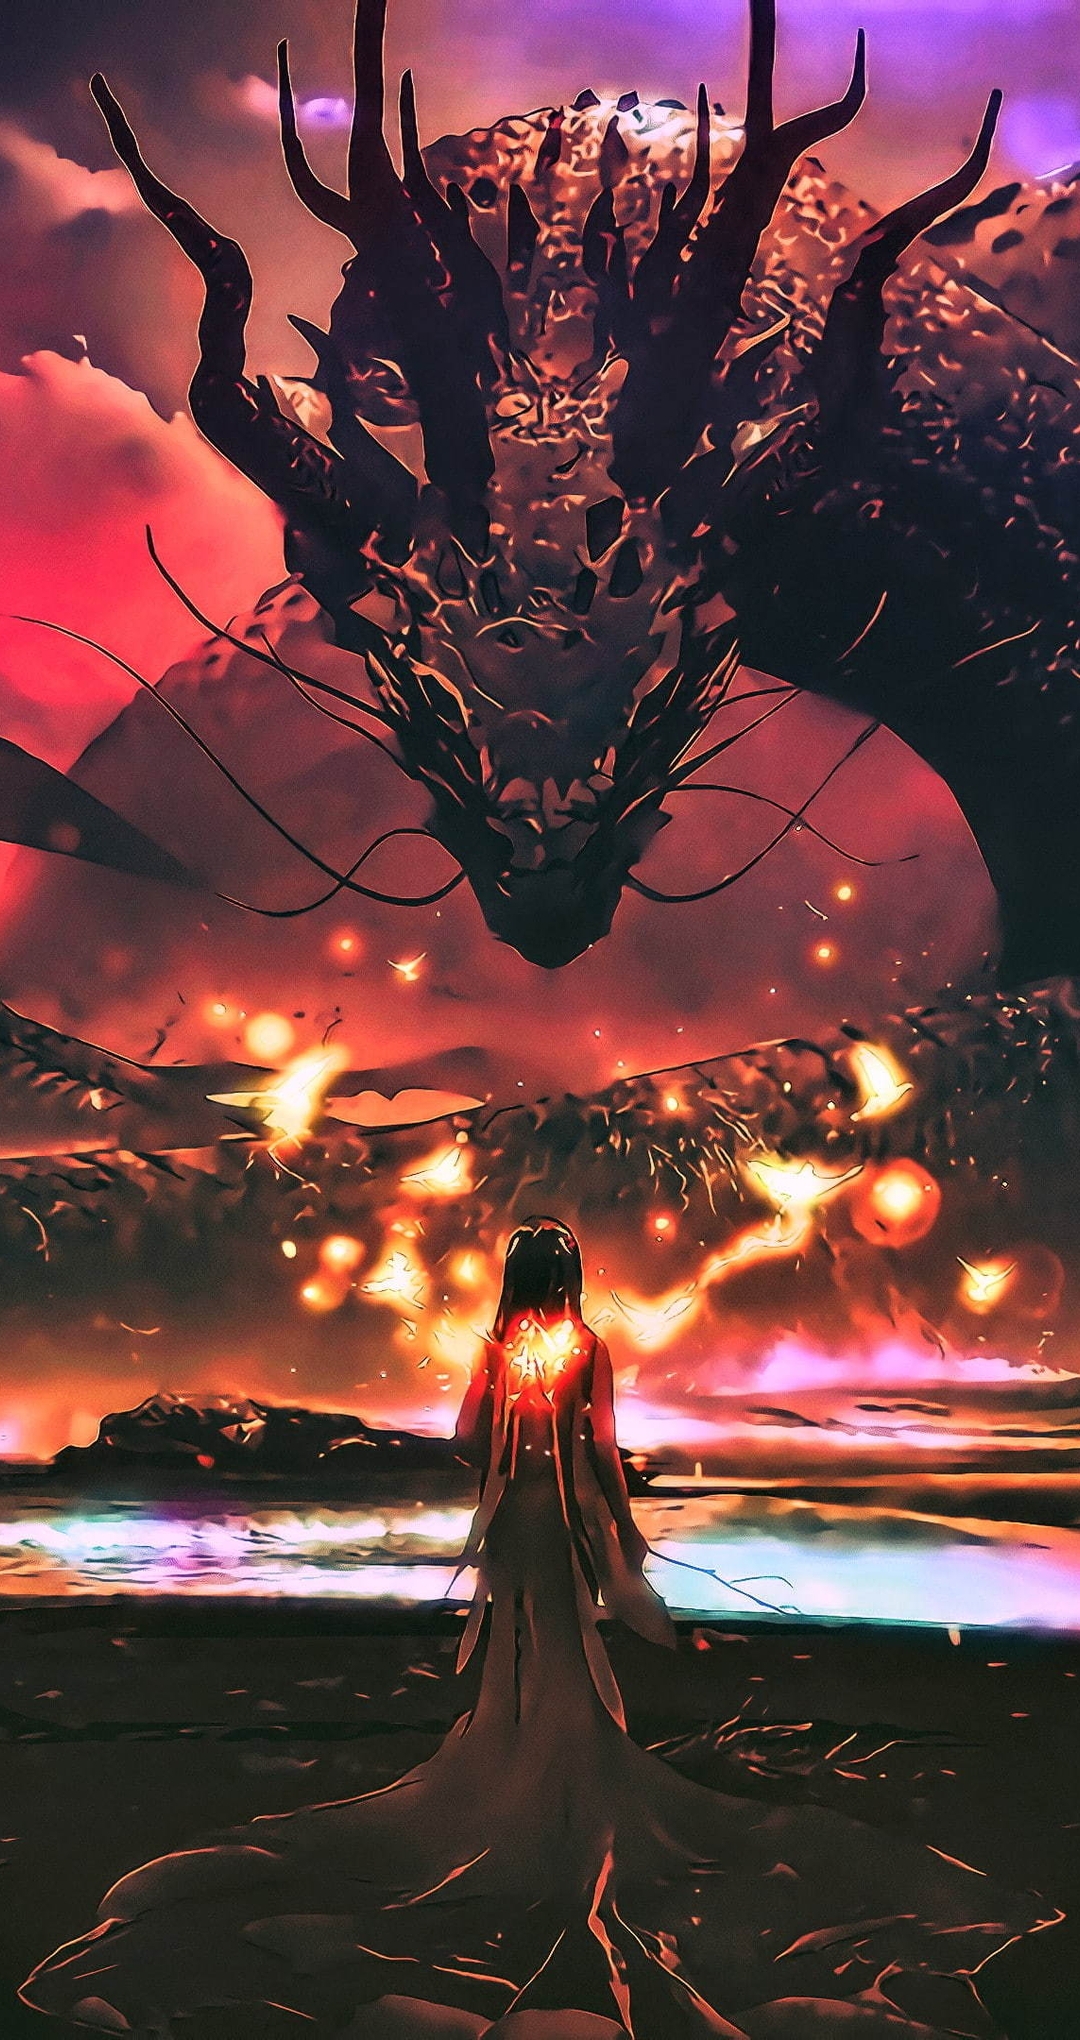 Image: Dragon, snake, girl, lights, water